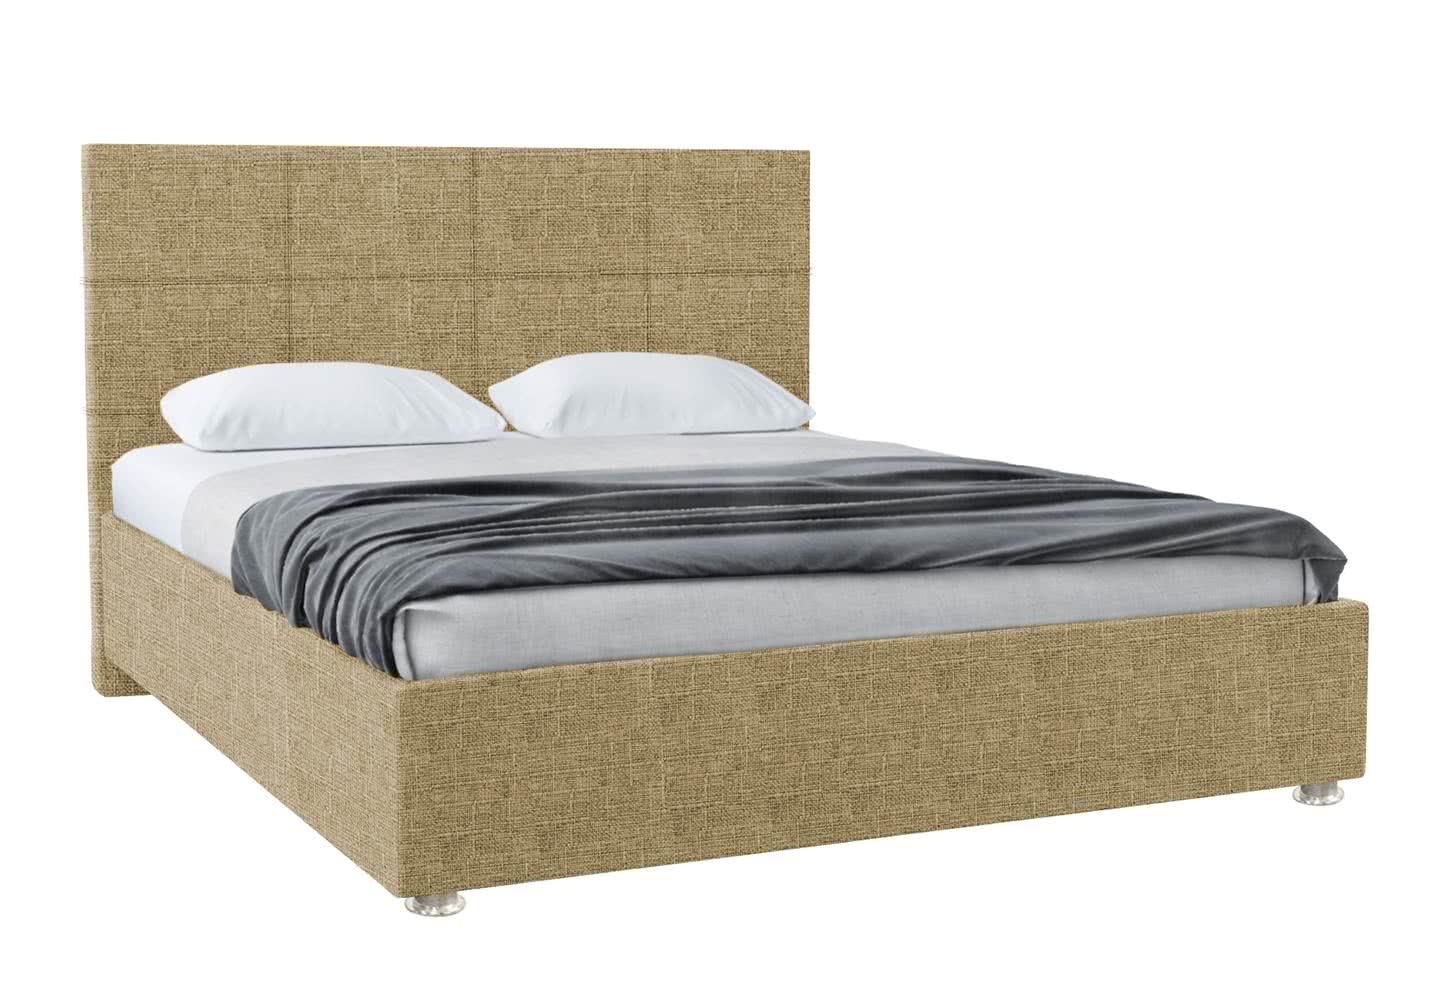 Кровать Promtex Атнес 140 х 190 см Mikki beige (рогожка) рейтинг и отзывы — какой выбрать?